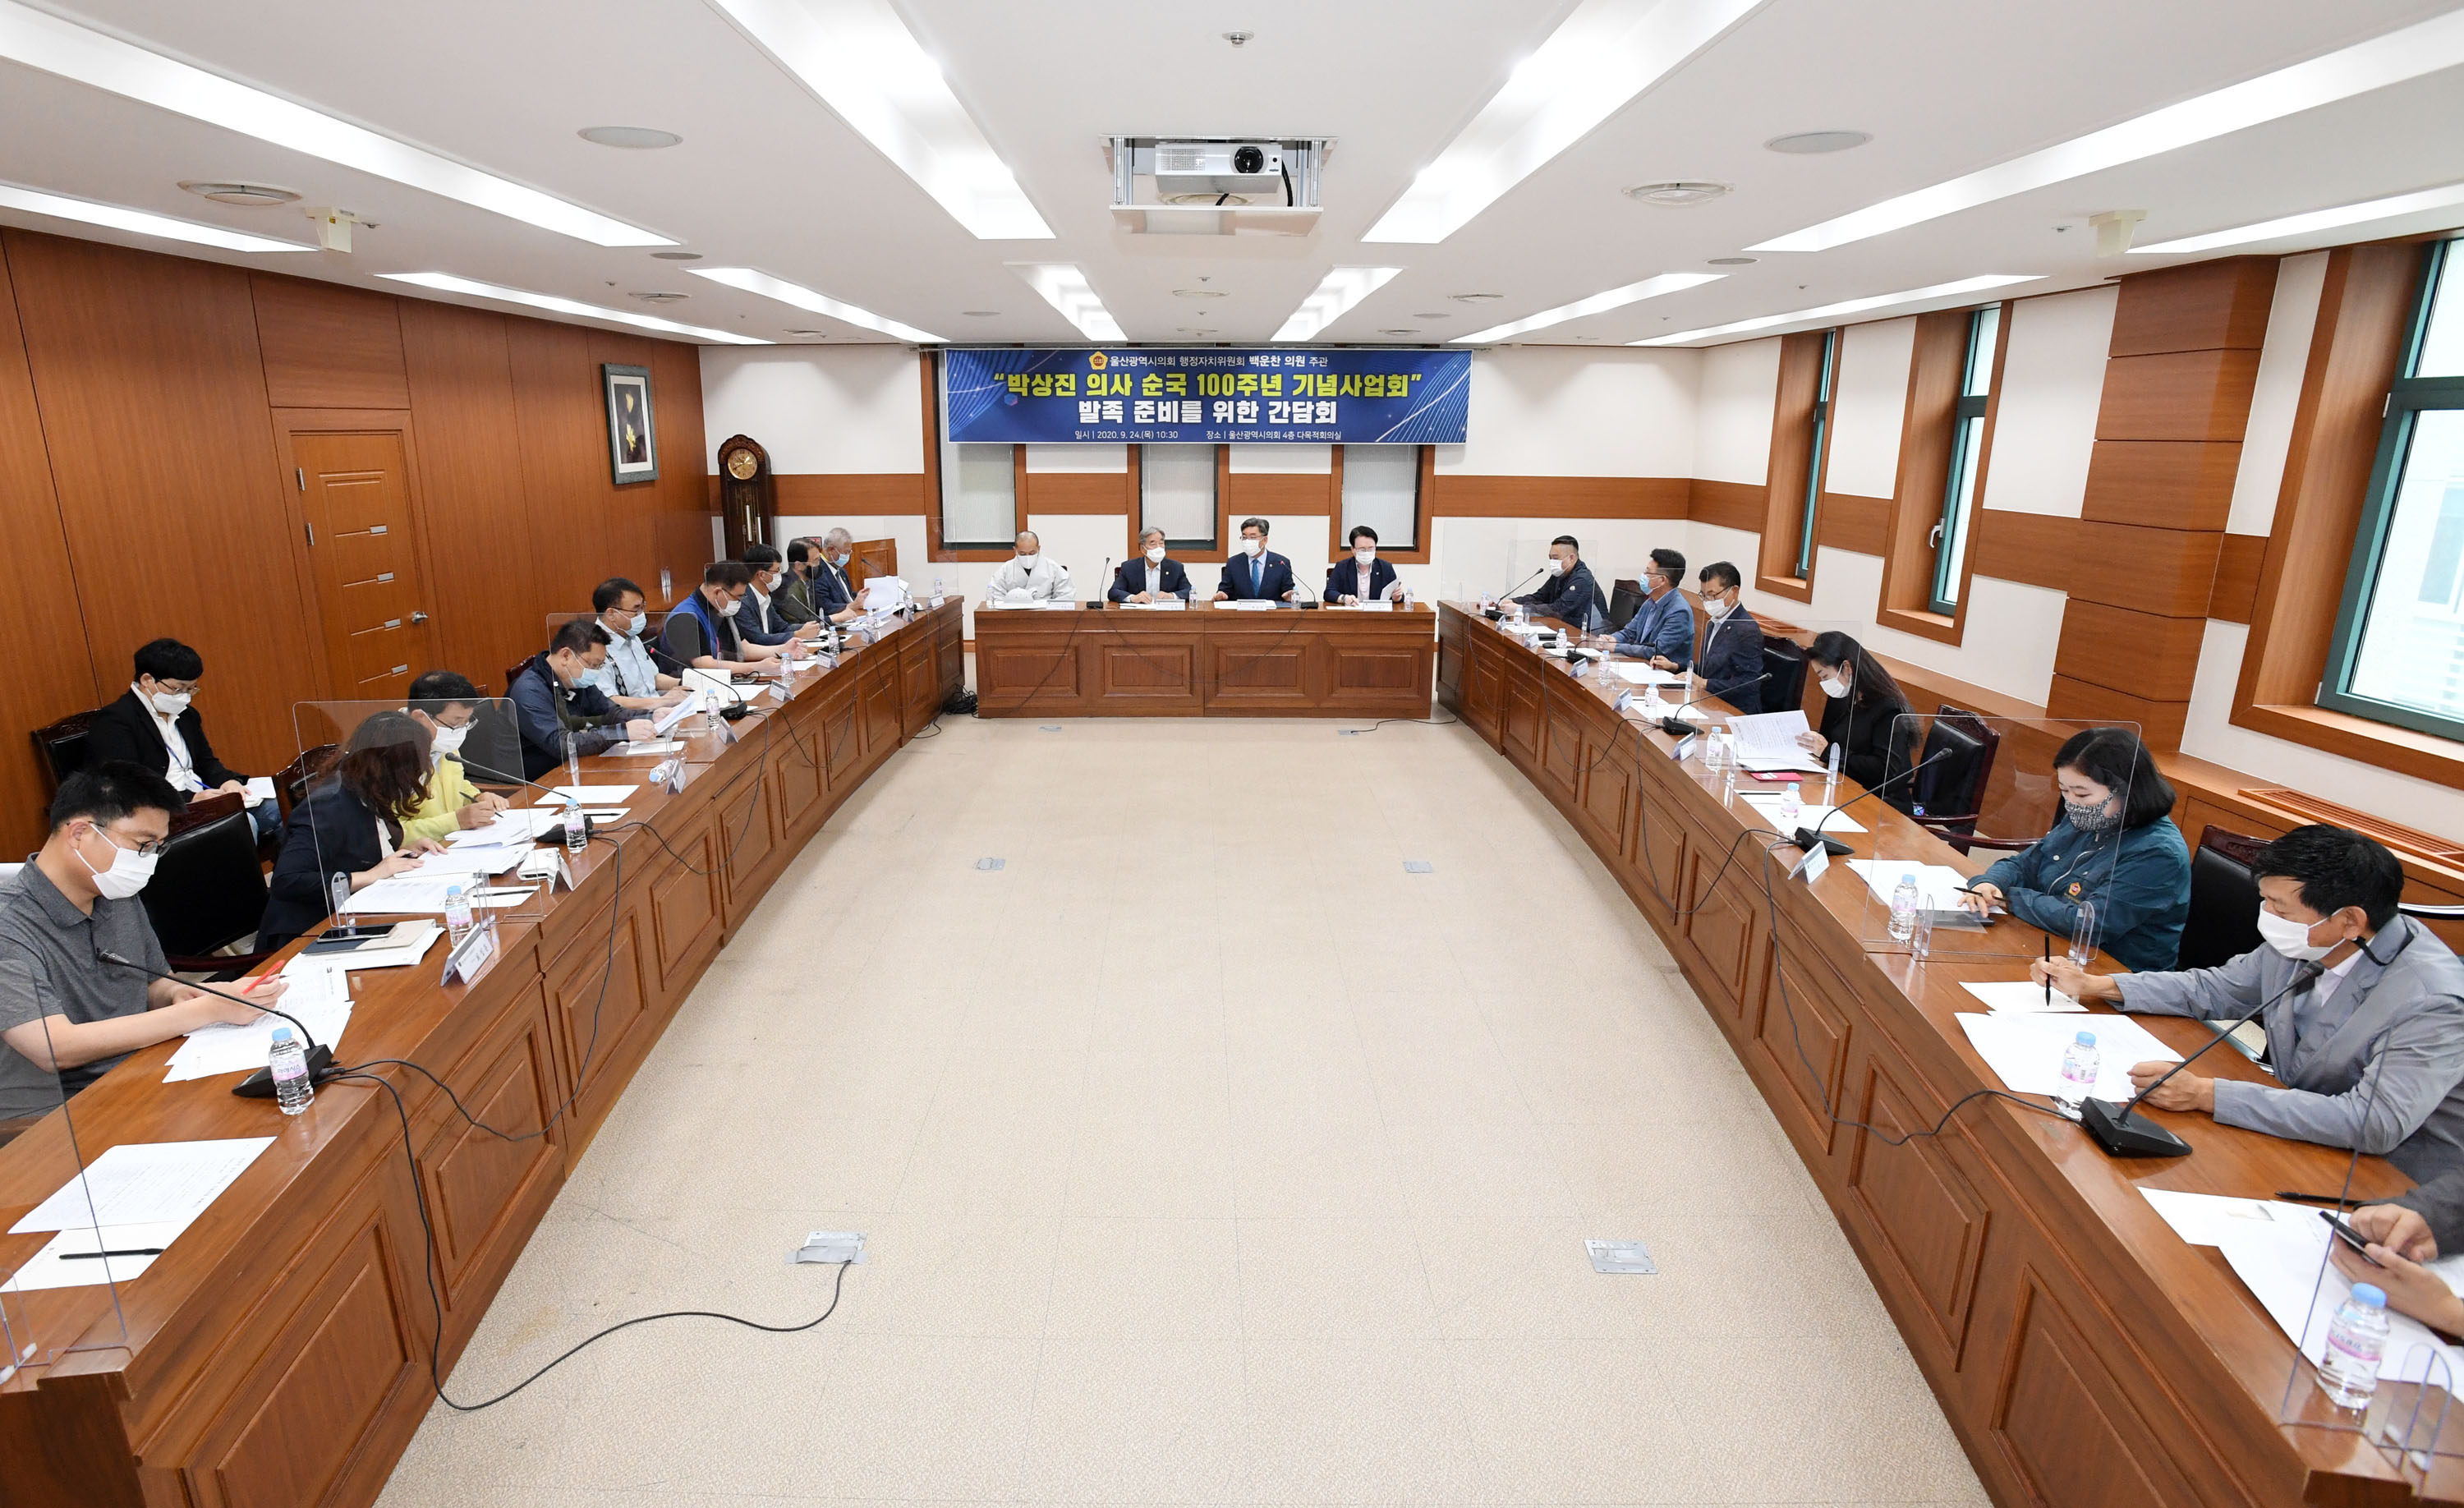 백운찬 의원, 박상진 의사 순국 100주년 기념사업회 발족 준비를 위한 간담회 개최6